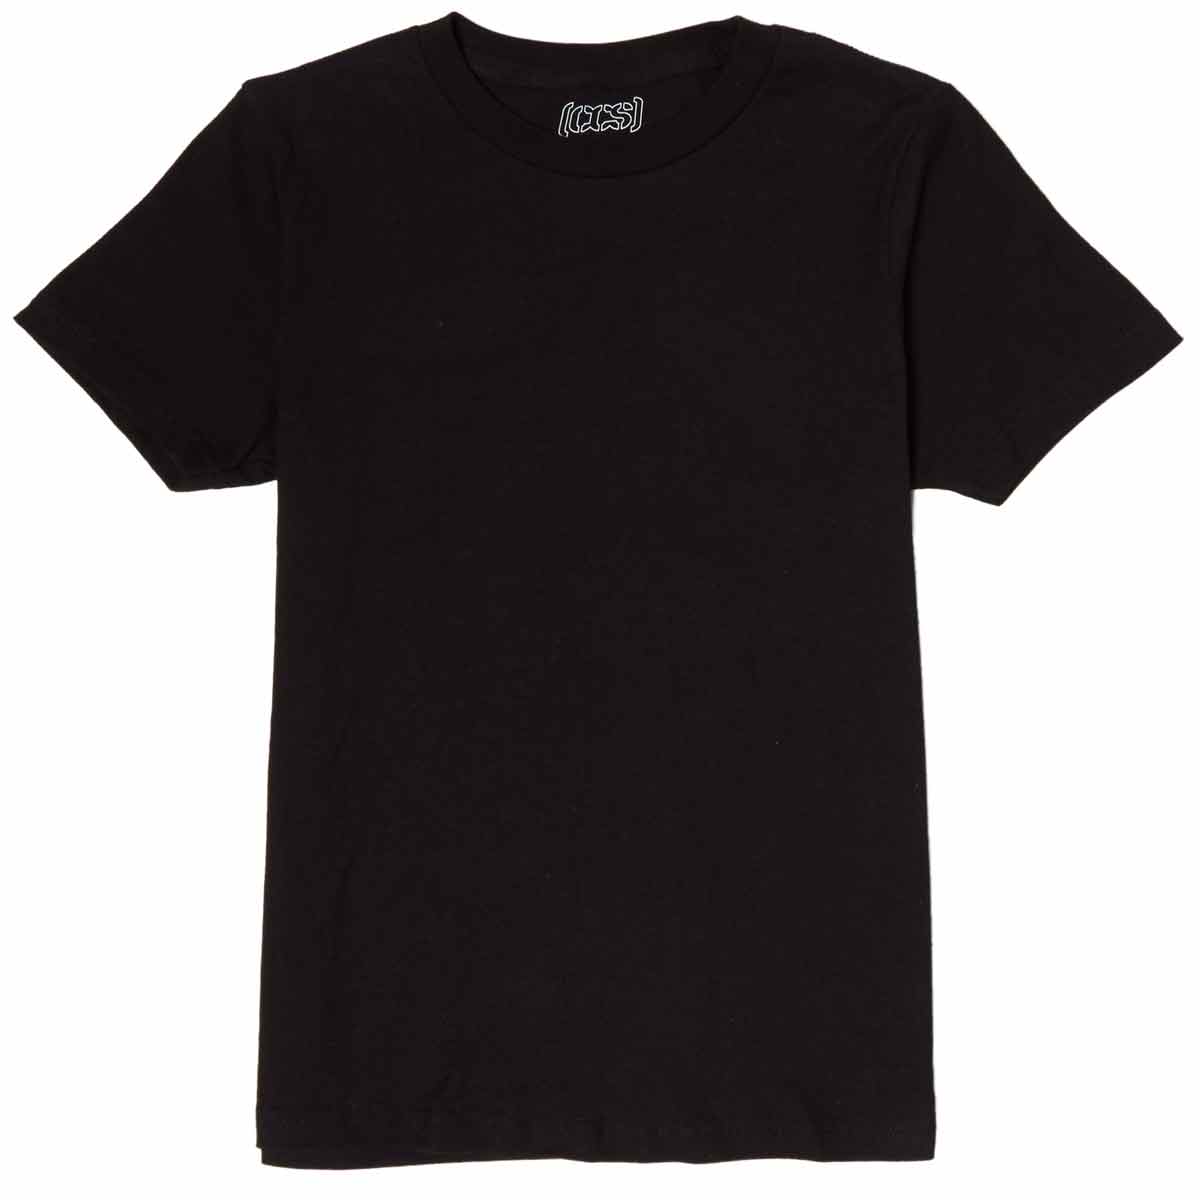 CCS Youth Basis T-Shirt - Black image 1